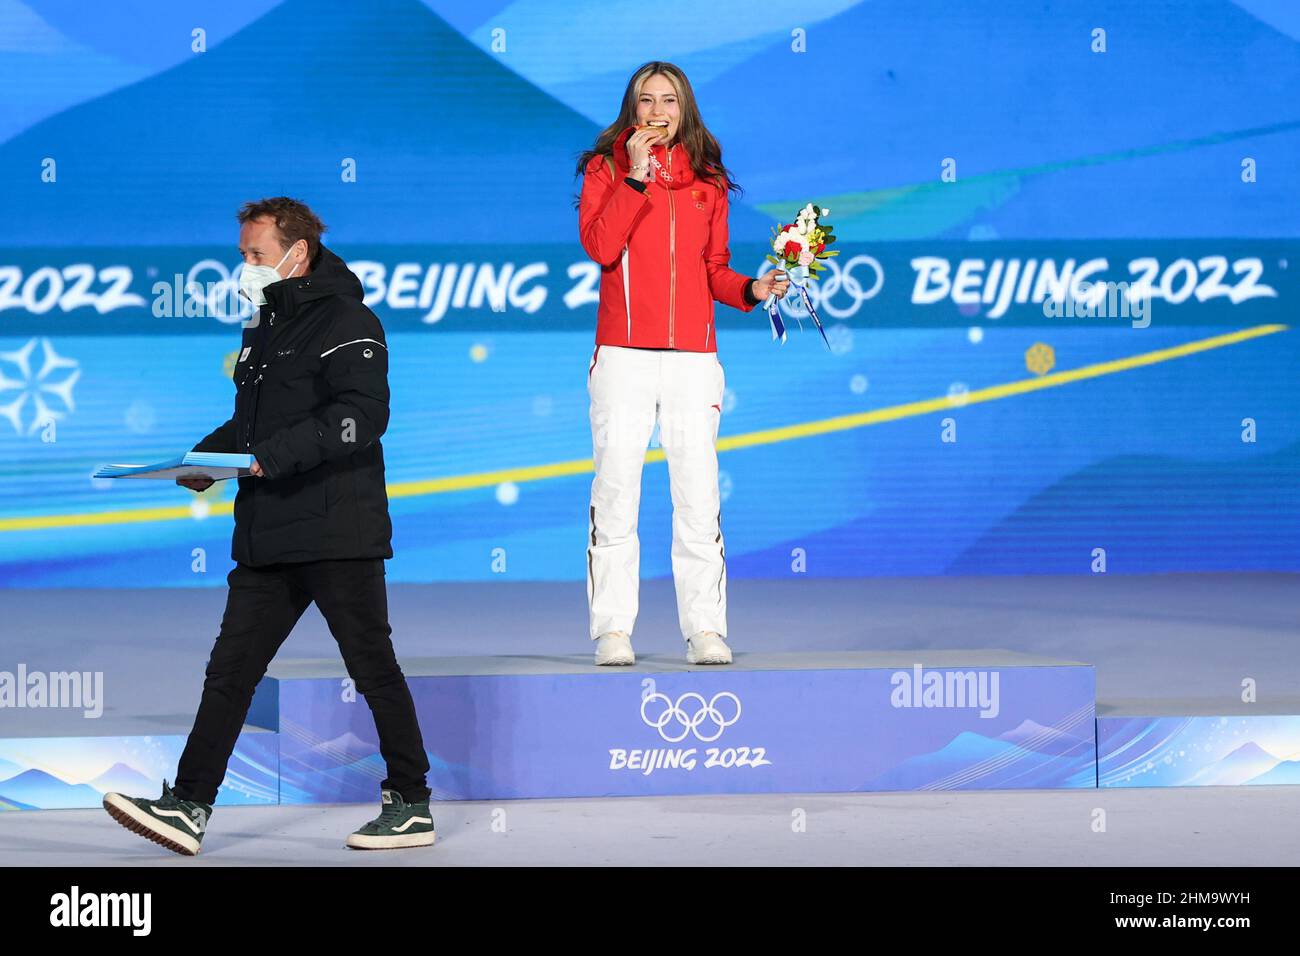 La Medalla de Oro de Eileen Gu (CHN) durante los Juegos Olímpicos de Invierno Beijing 2022, Freestyle Skiing, Femenina Freeski Big Air el 8 de febrero de 2022 en Beijing, China - Foto: Osports/DPPI/LiveMedia Foto de stock